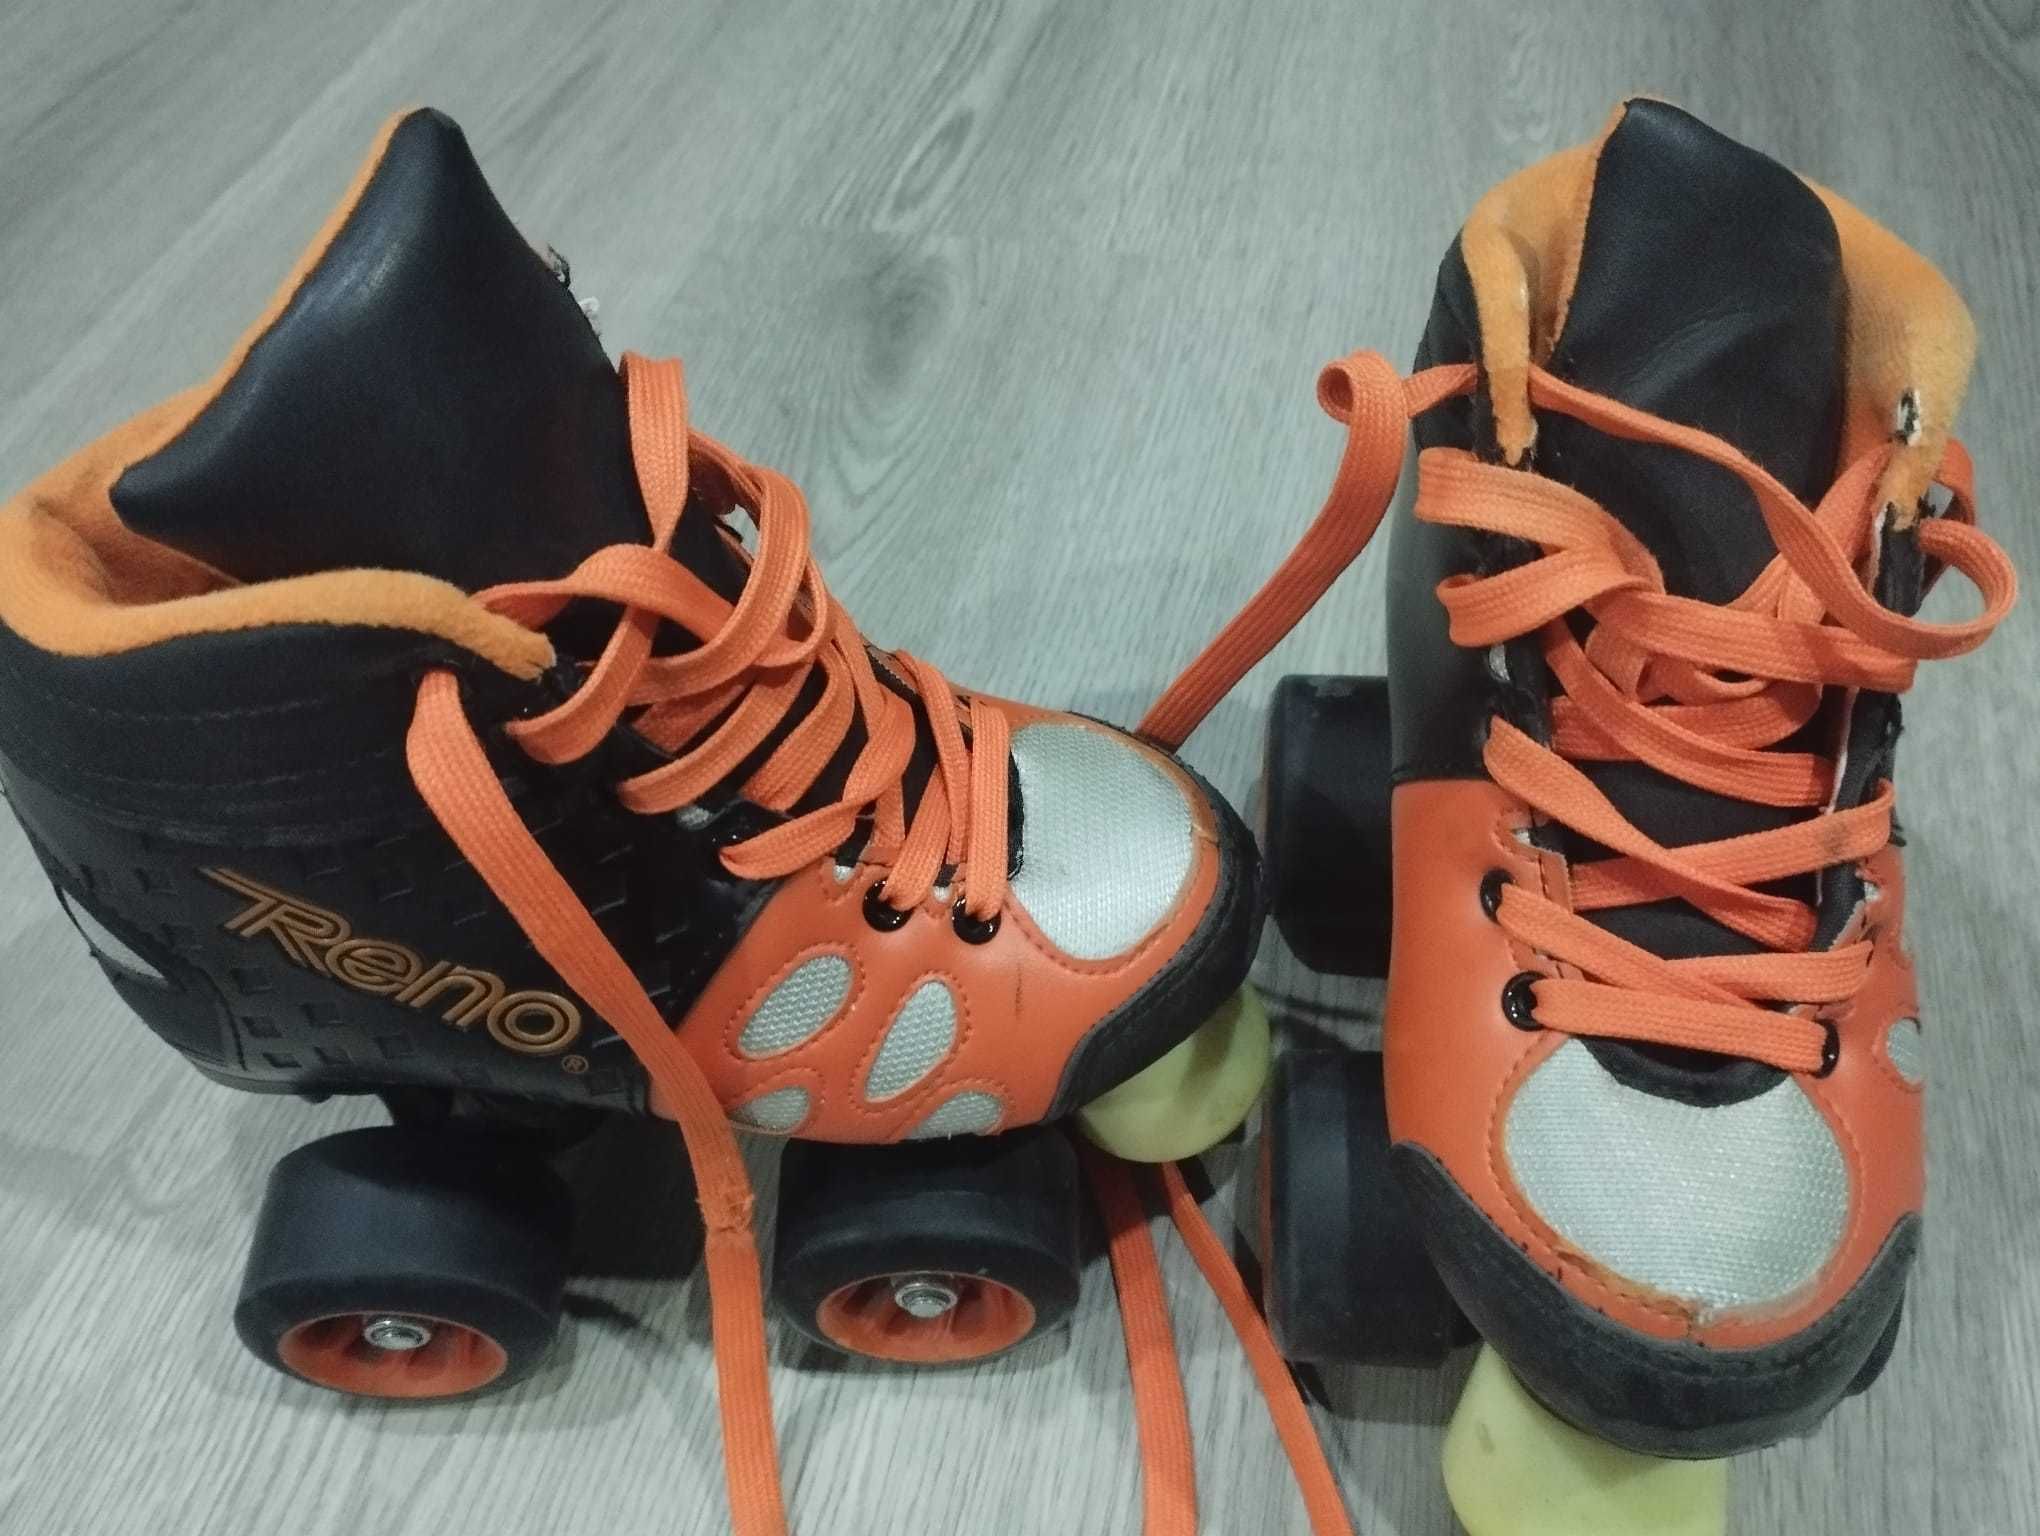 Patins de iniciação à patinagem- usados mas em bom estado